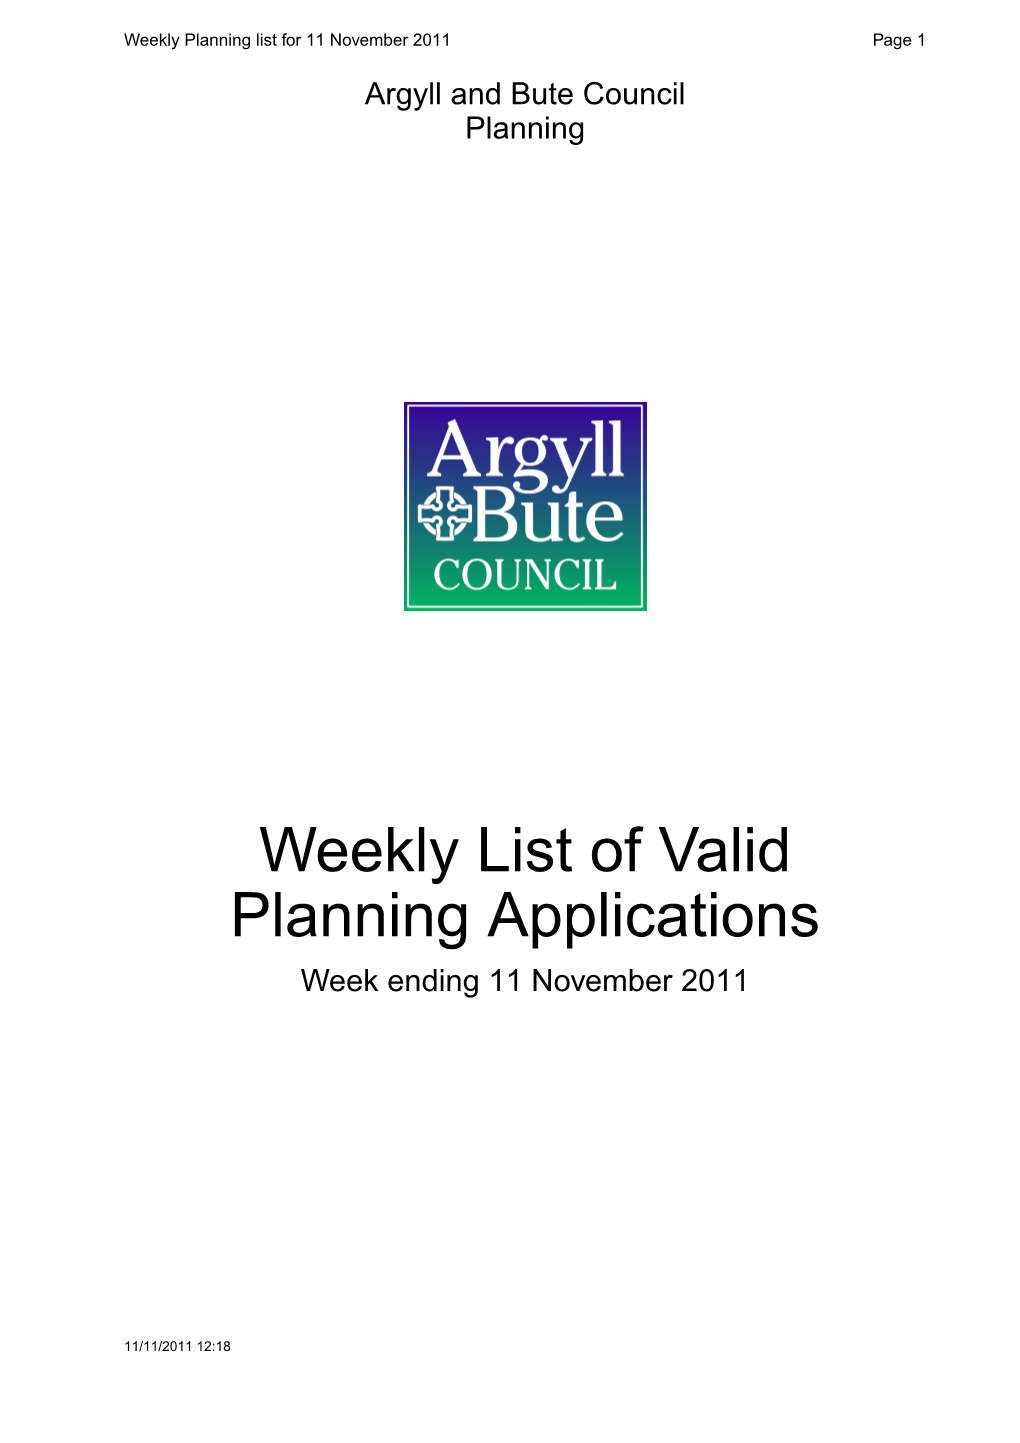 Weekly List of Valid Planning Applications Week Ending 11 November 2011